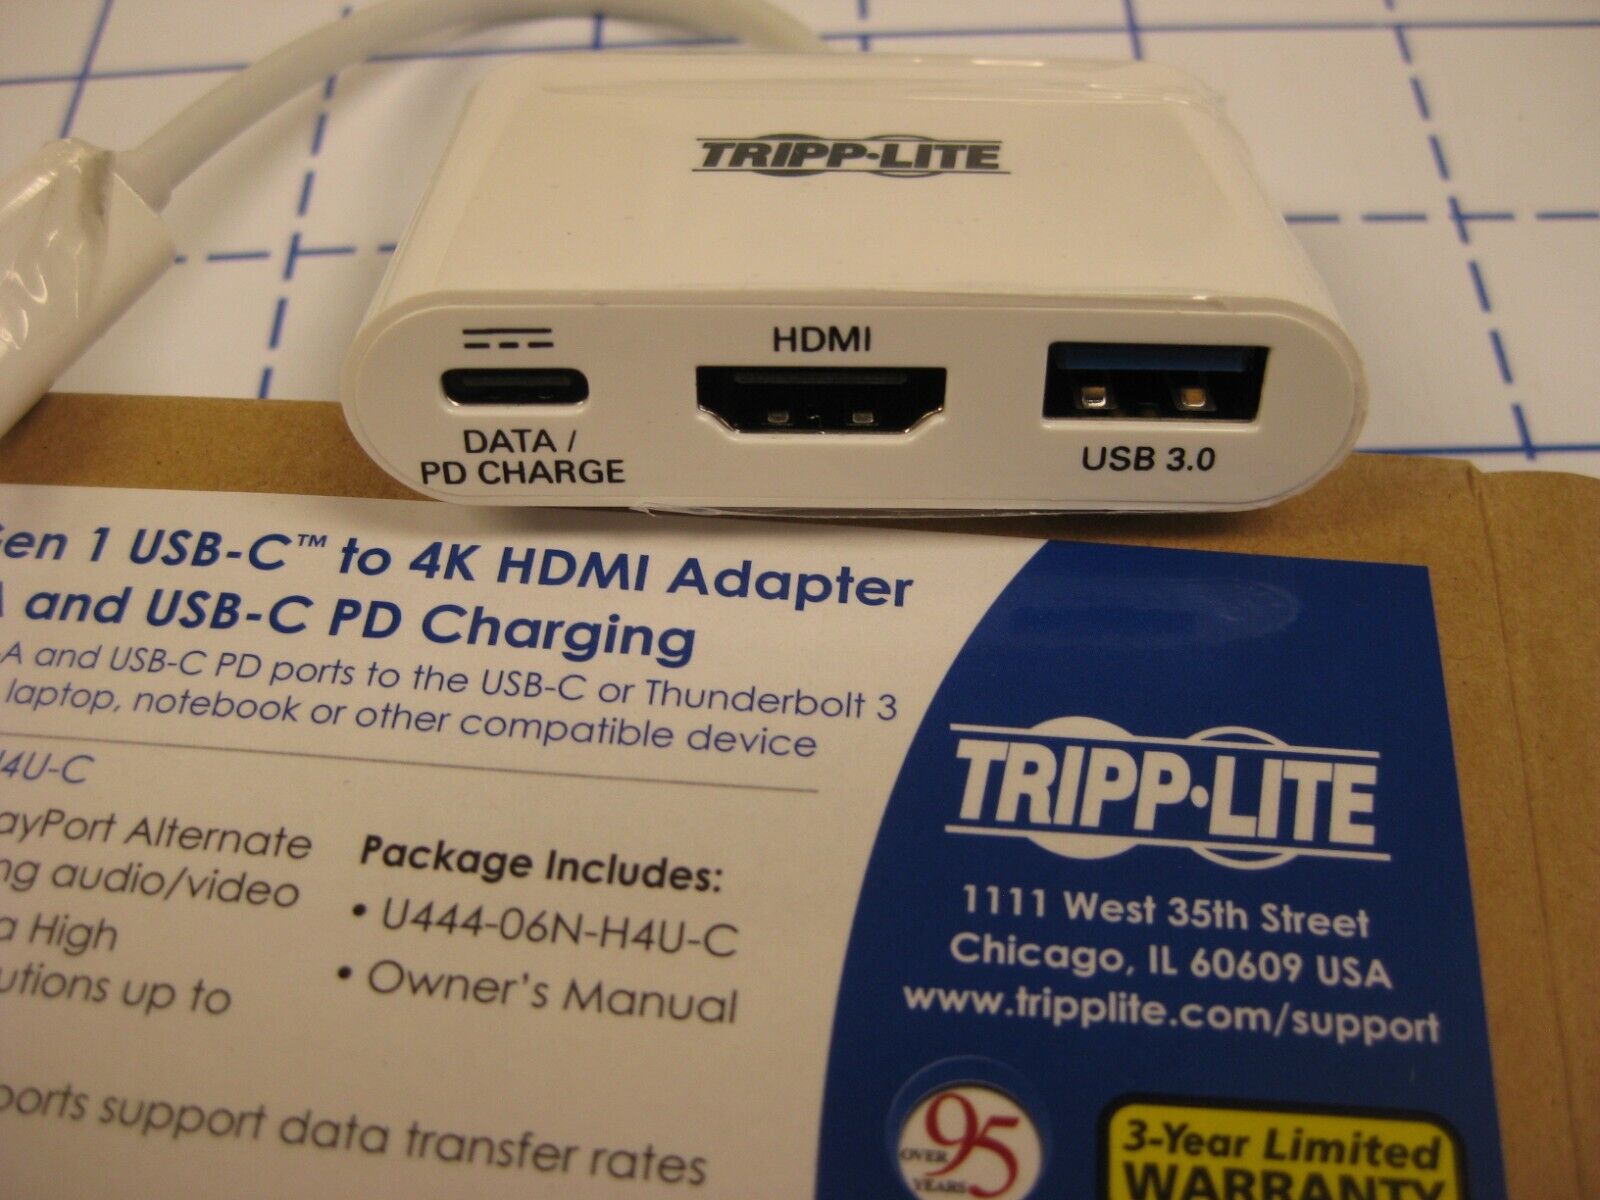 Tripp-Lite USB3.1 Gen 1 USB-C to 4K HDMI Adapter w/ charging